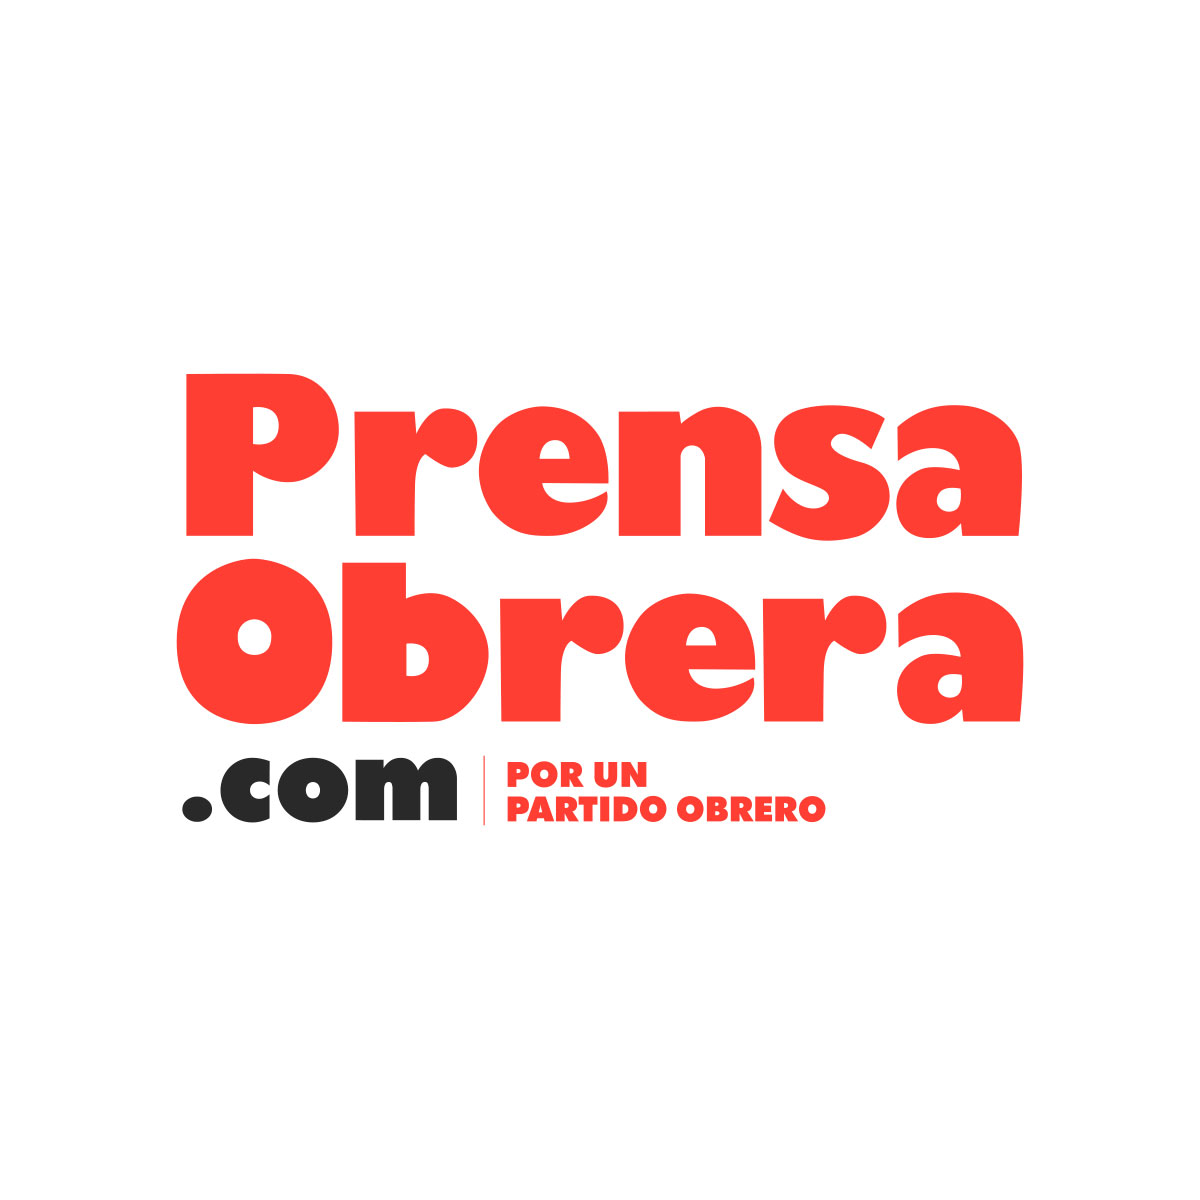 (c) Prensaobrera.com